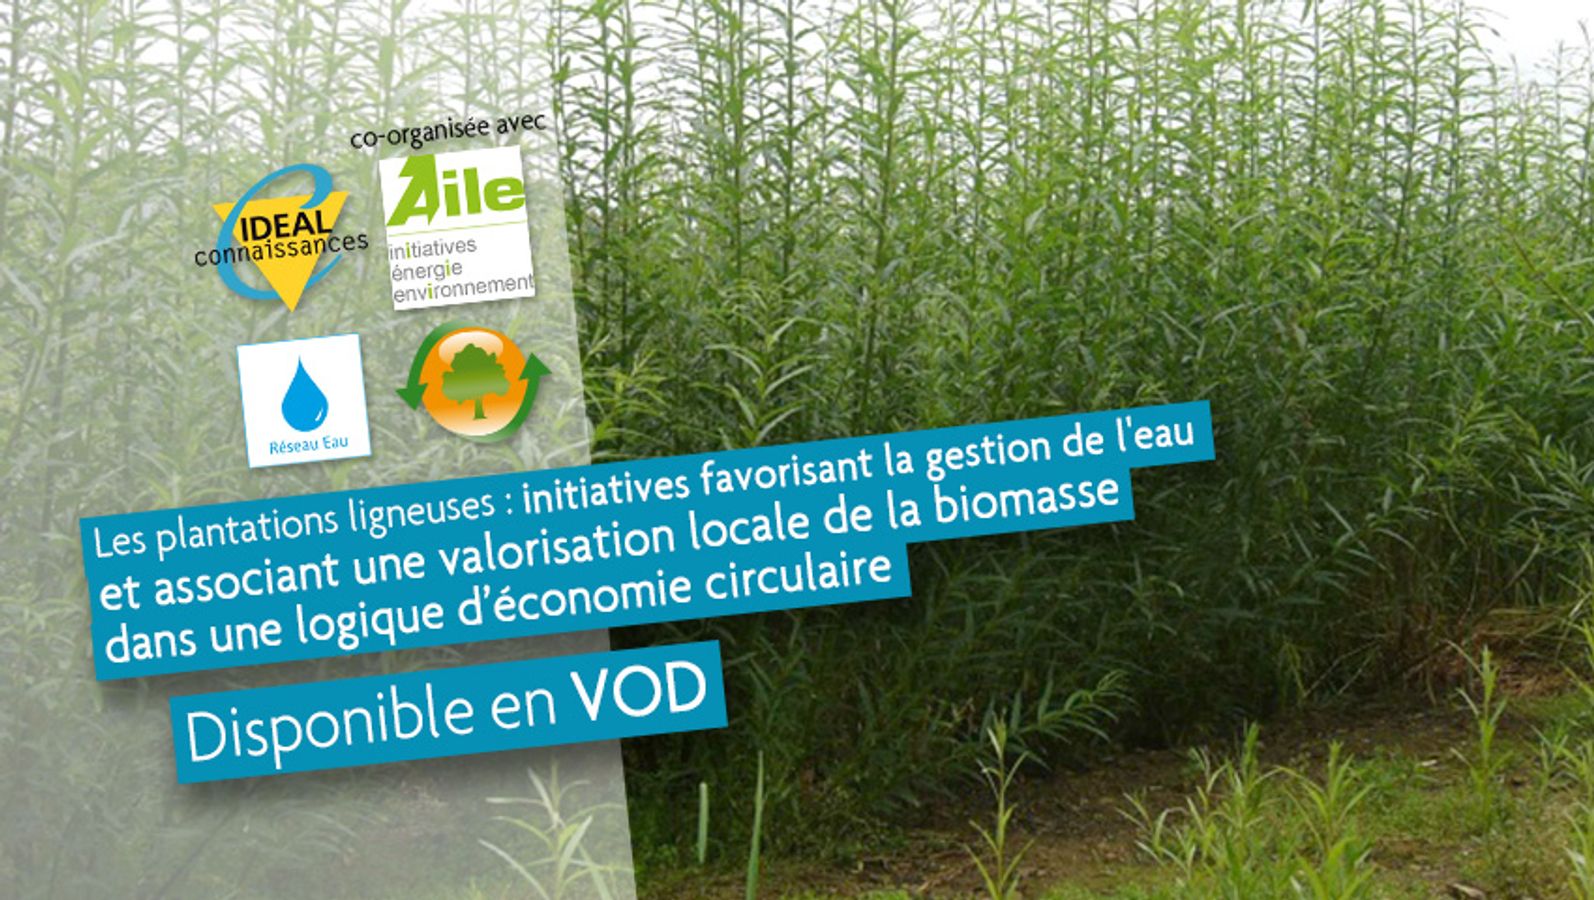 Les plantations ligneuses : initiatives favorisant la gestion de l'eau et associant une valorisation locale de la biomasse dans une logique d’économie circulaire